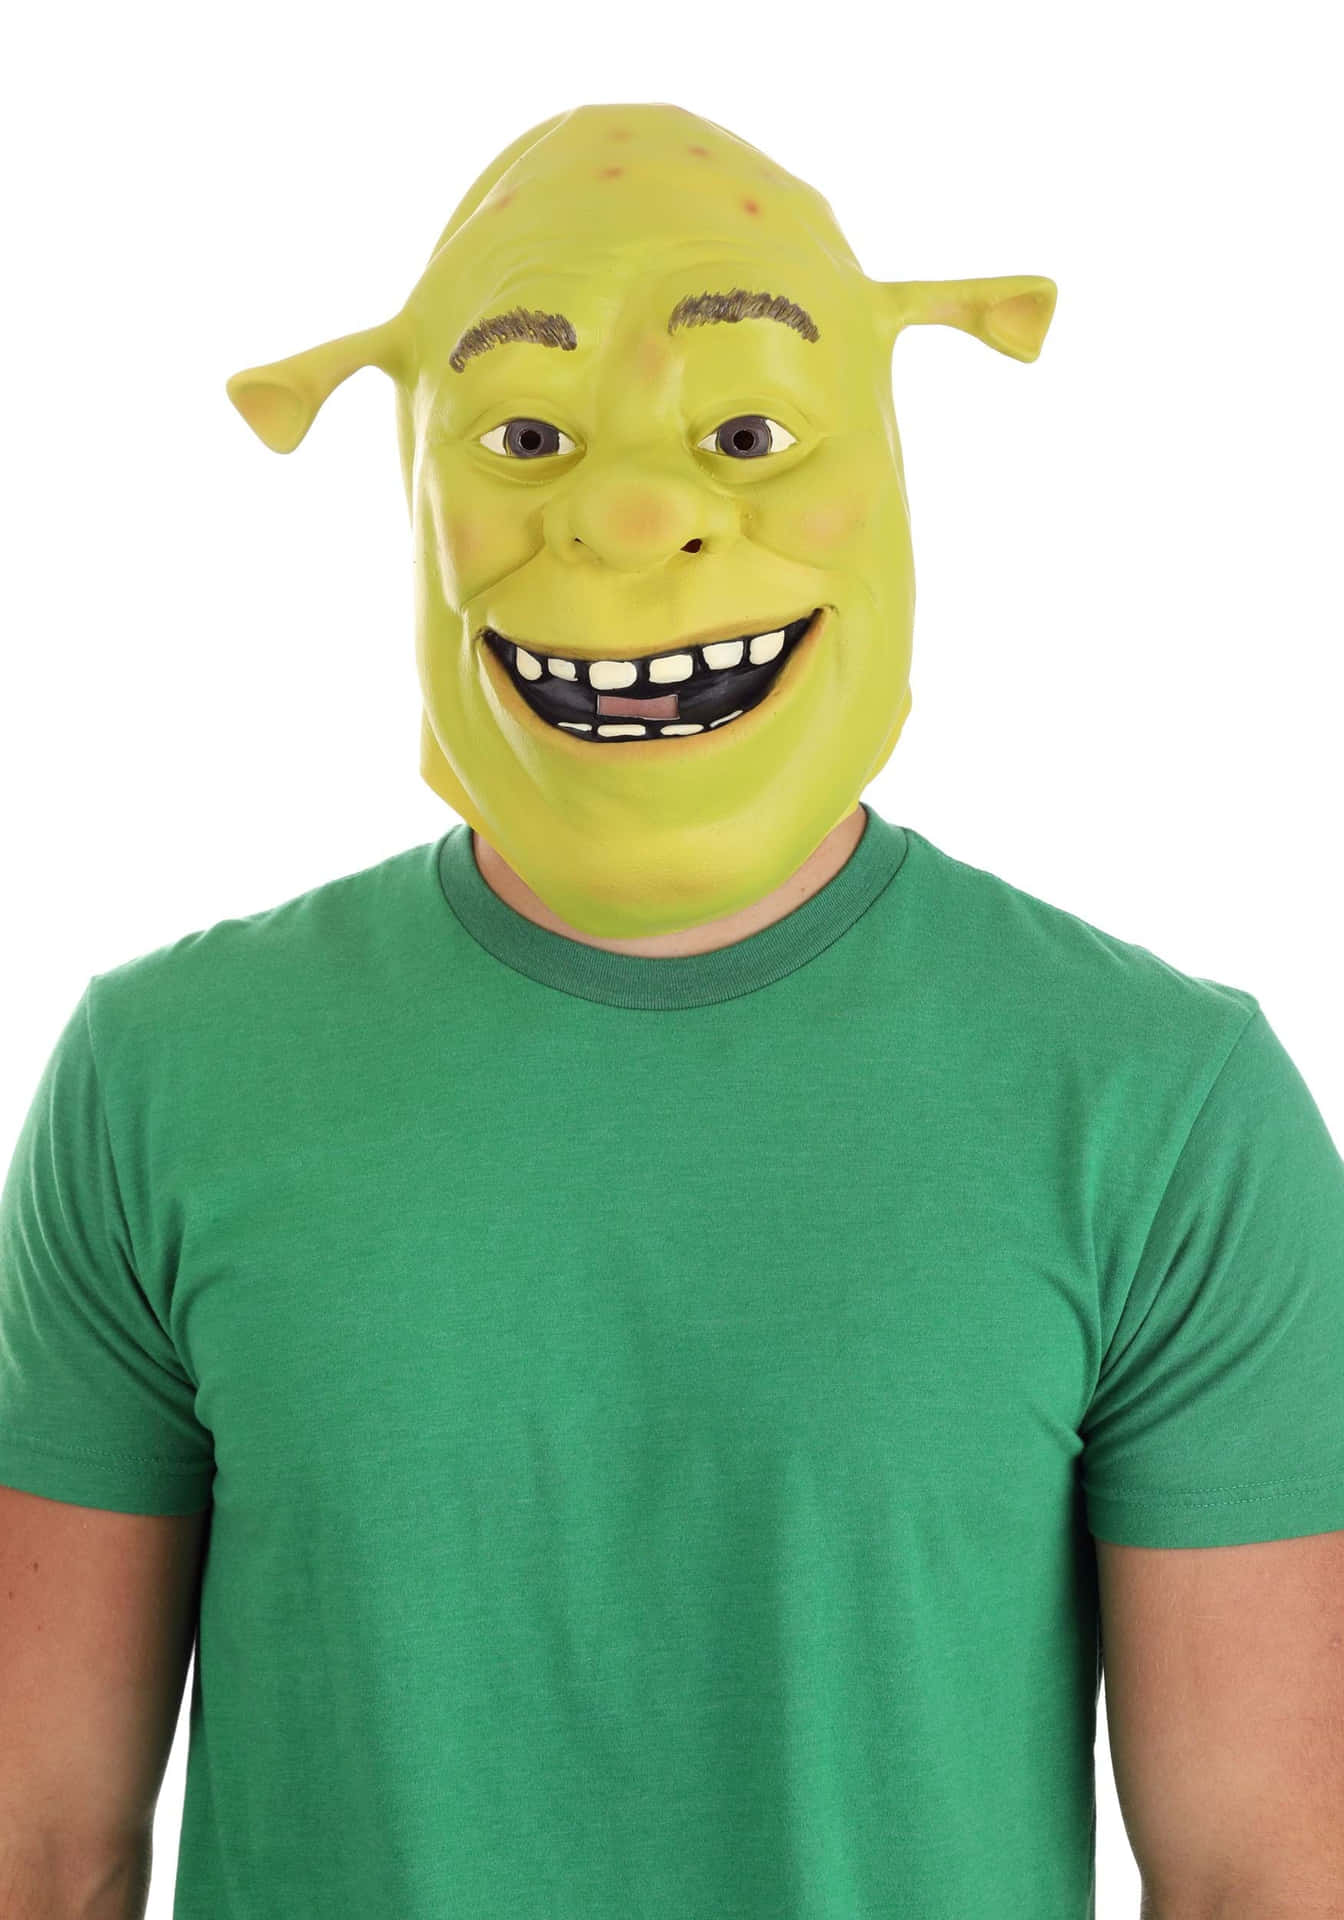 "Shrek's Cheeriest Smile!"